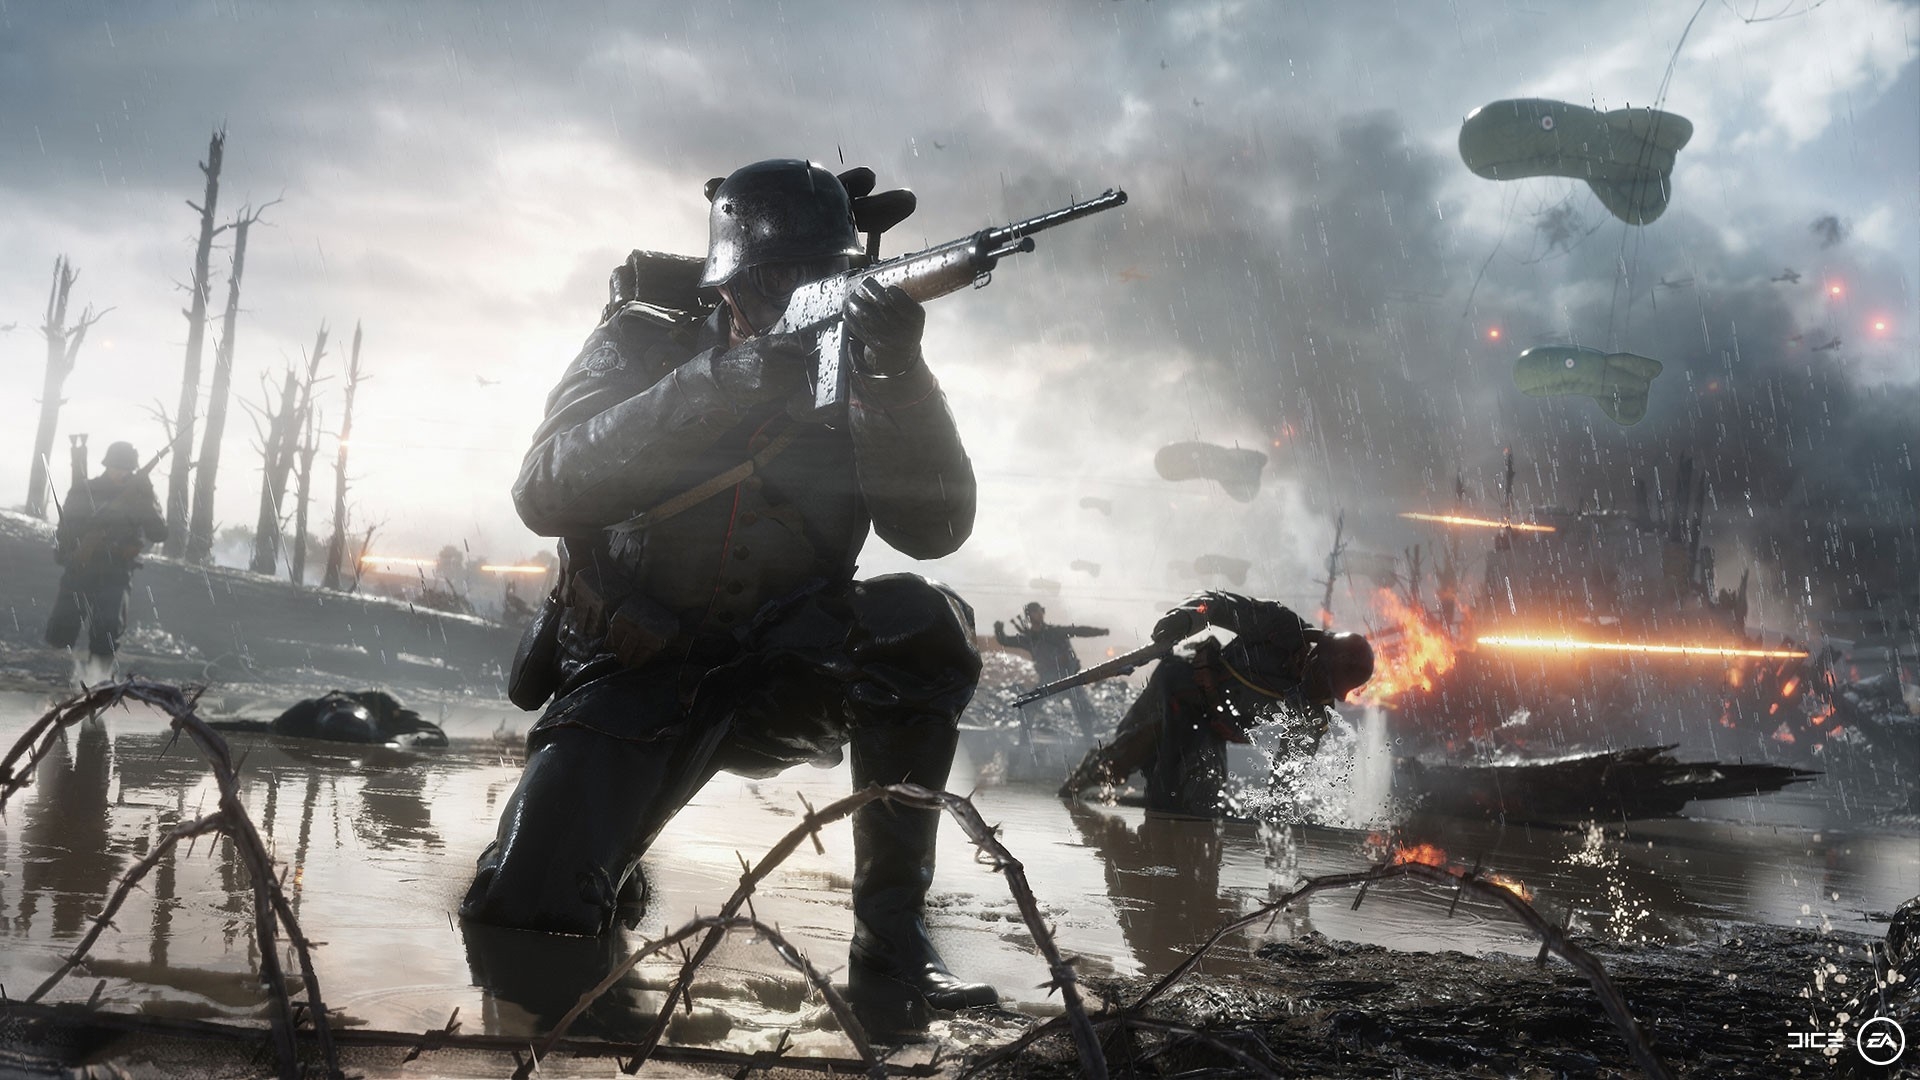 Battlefield 1, Zeppelins, Guns, Soldiers, Mask - Battlefield No Man's Land - HD Wallpaper 